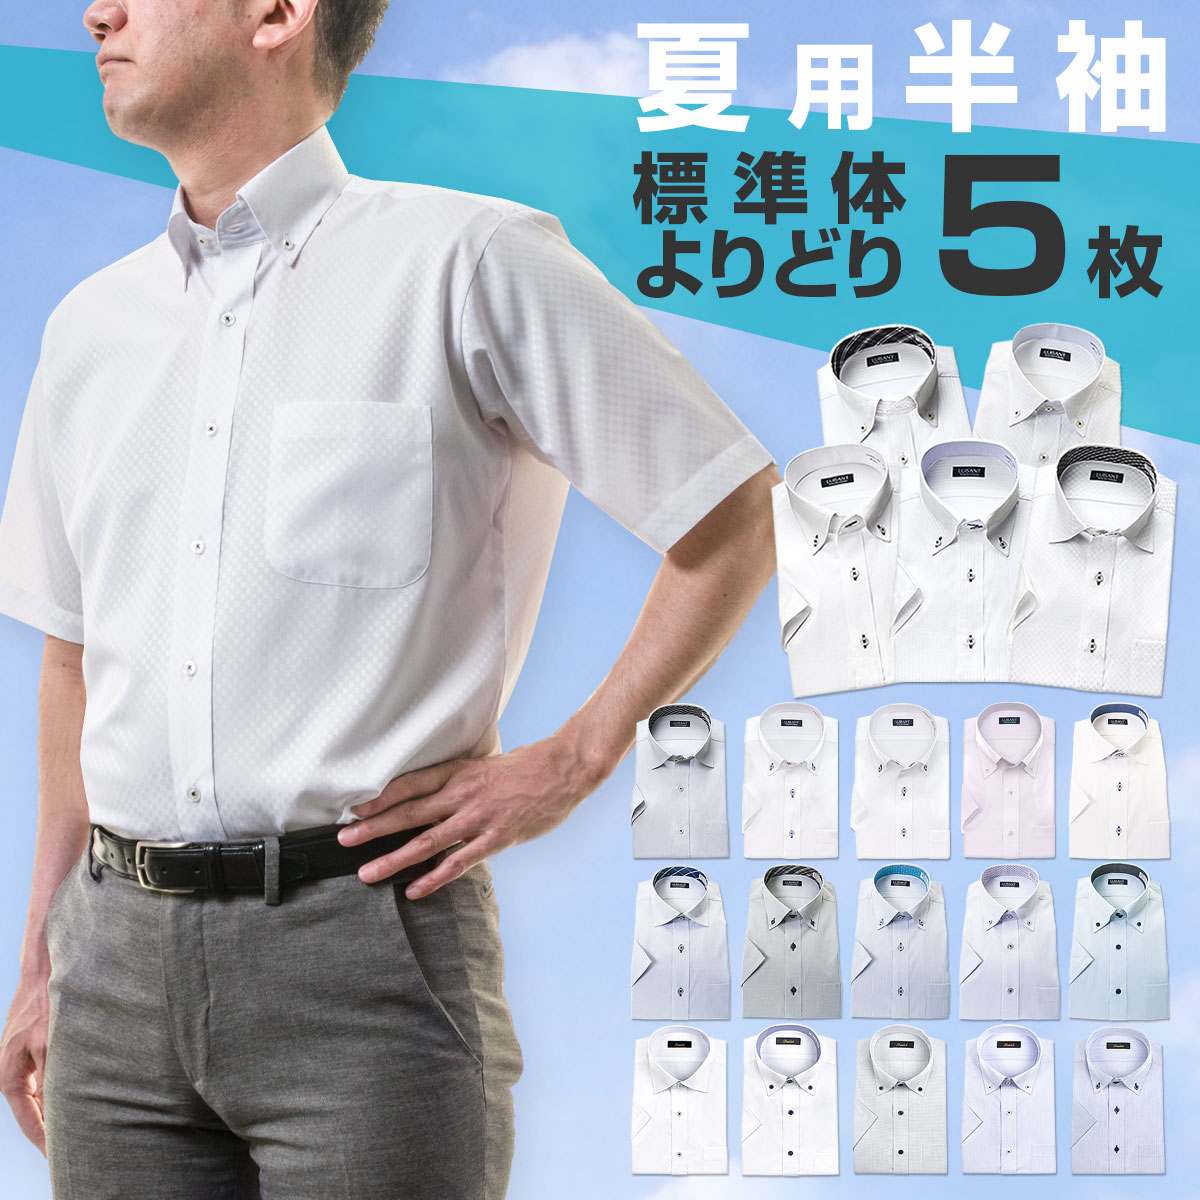 ラッピング不可 半袖ワイシャツ yシャツ カッターシャツ ドレスシャツ ビジネスシャツ 男性 白 青 S M L LL 3L セット形態安定シャツ ボタンダウン Yシャツ よりどり5枚セット 激安通販専門店 よりどり半袖5枚 送料無料カード決済可能 チェック メンズ ストライプ グレー 10par 送料無料 セット ワイドカラー ビジネス ホワイト 大きいサイズ ブルー ワイシャツ 半袖 UNN よりどり5枚 新生活 形態安定